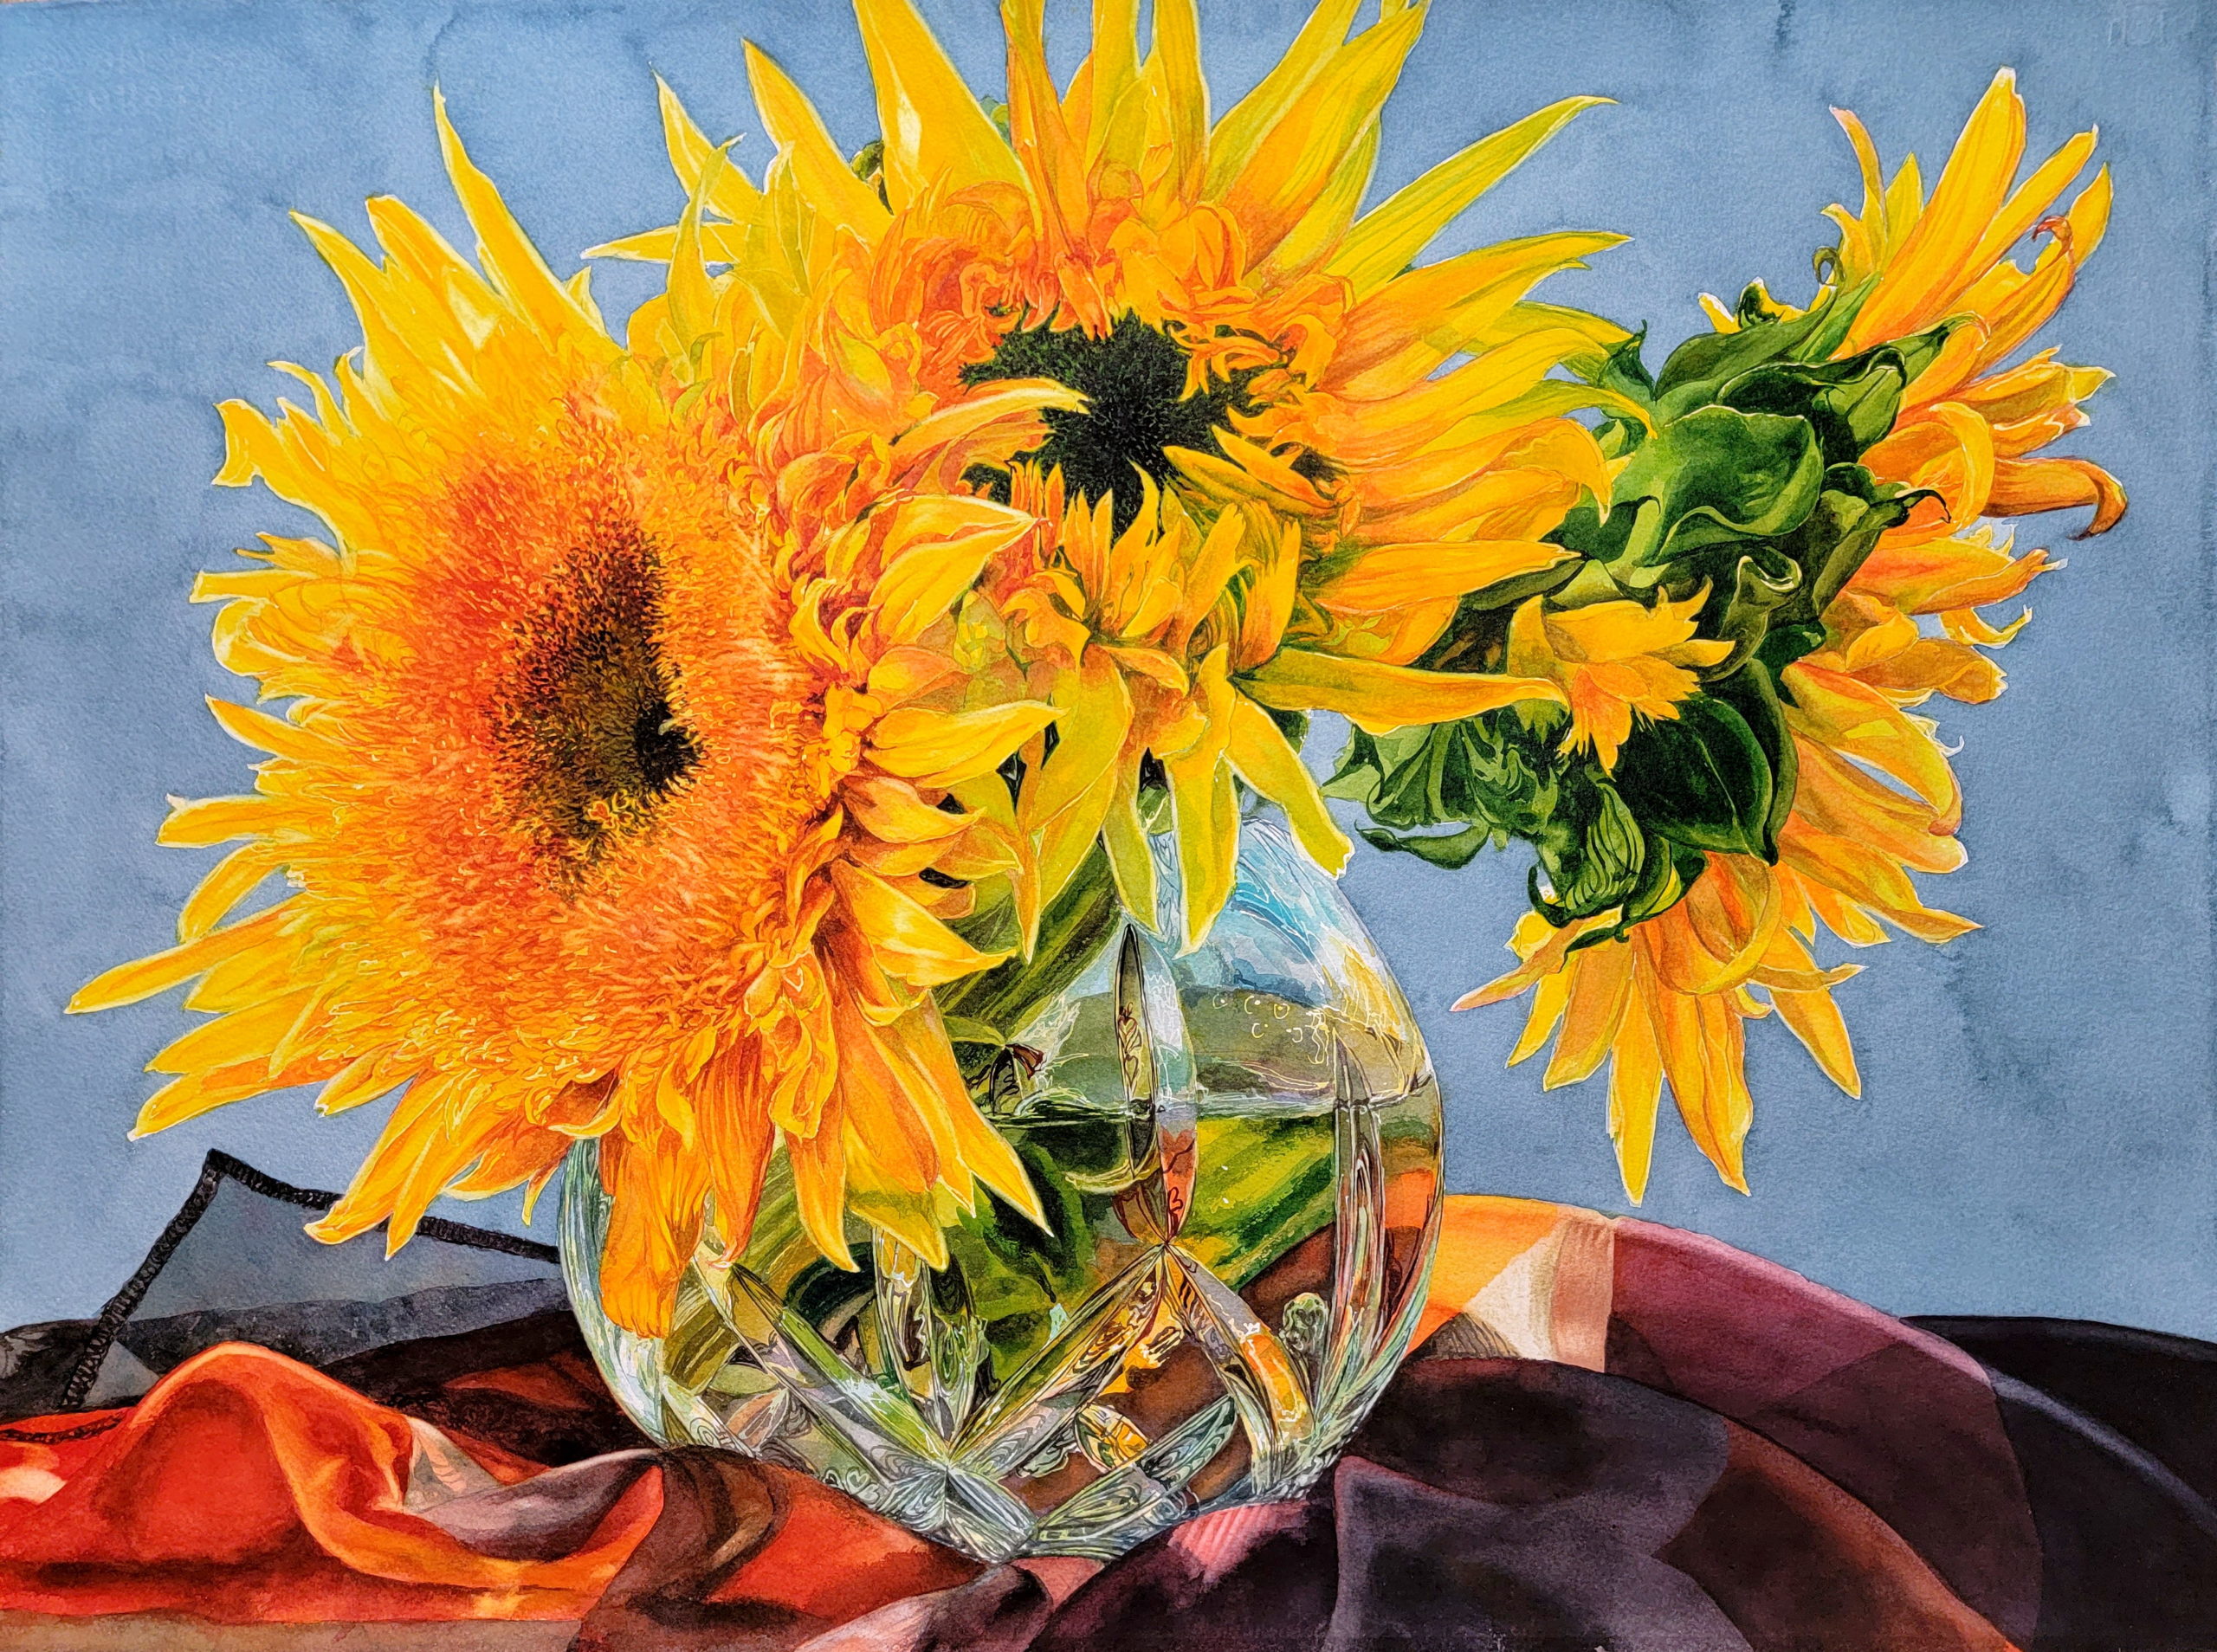 "Joy of Sunflowers" by Soon Y. Warren